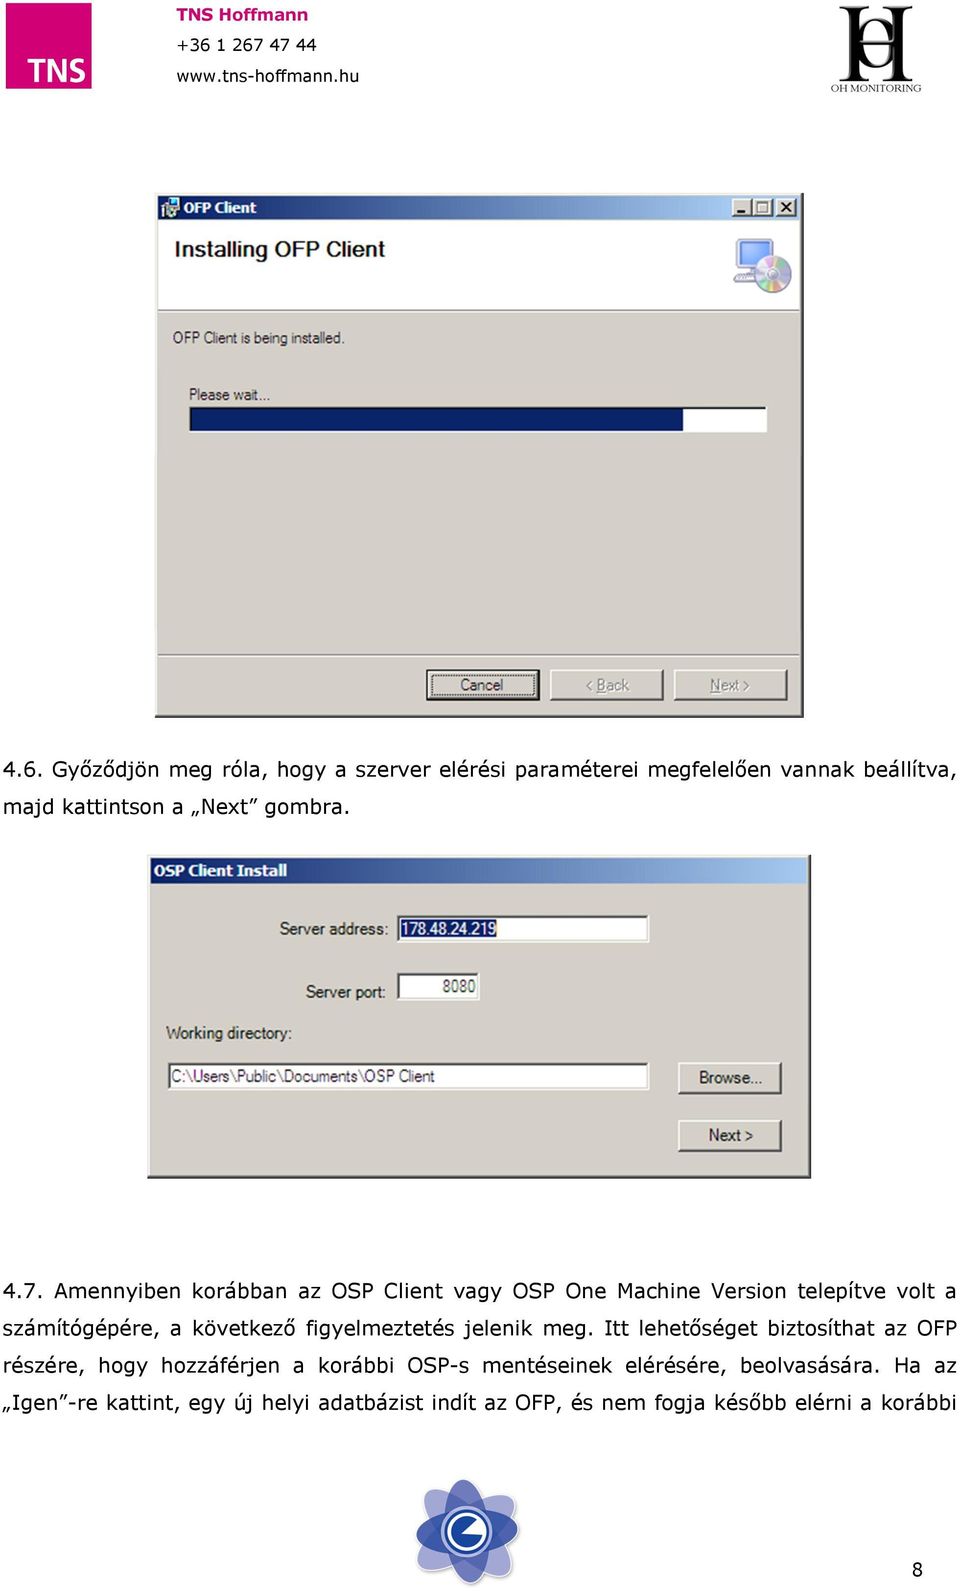 Amennyiben korábban az OSP Client vagy OSP One Machine Version telepítve volt a számítógépére, a következő